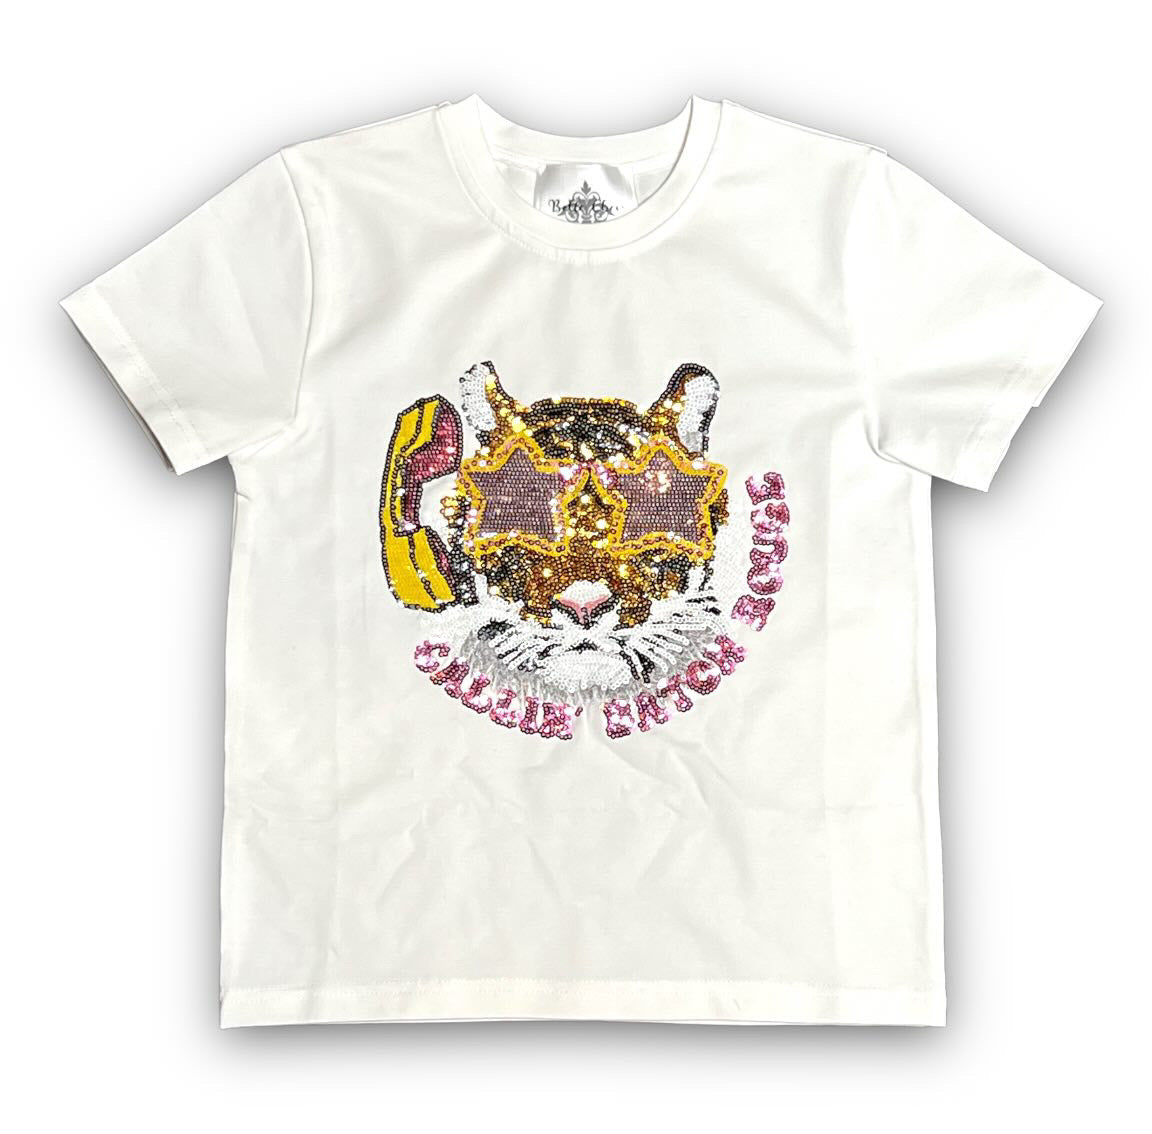 Preorder Callin’ Baton Rouge shirt